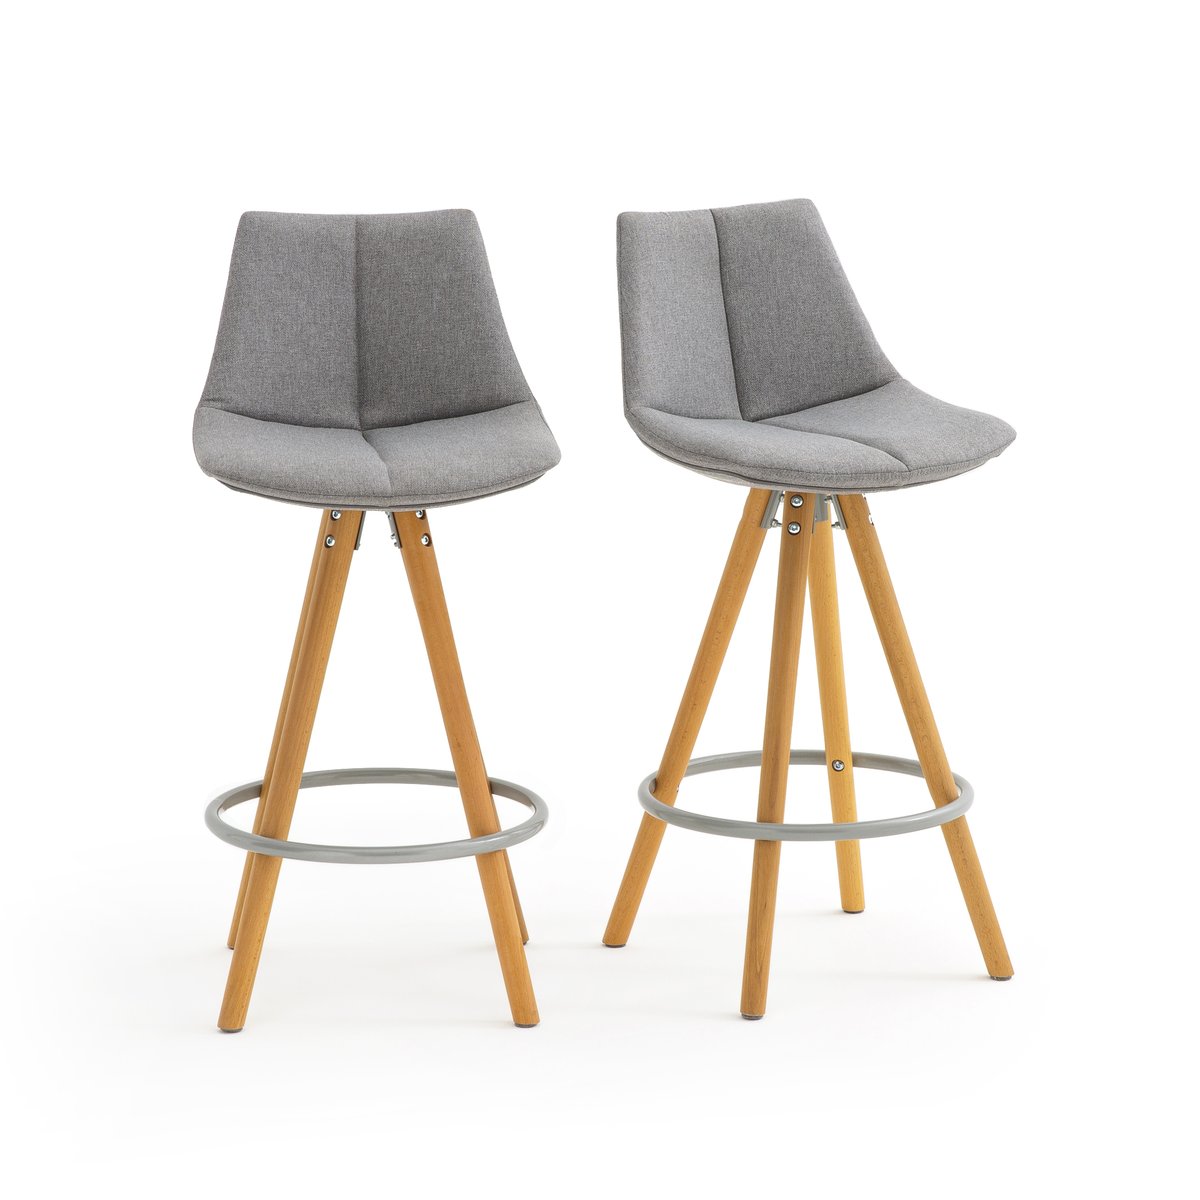 Комплект из 2 барных стульев Средней высоты Asting единый размер серый